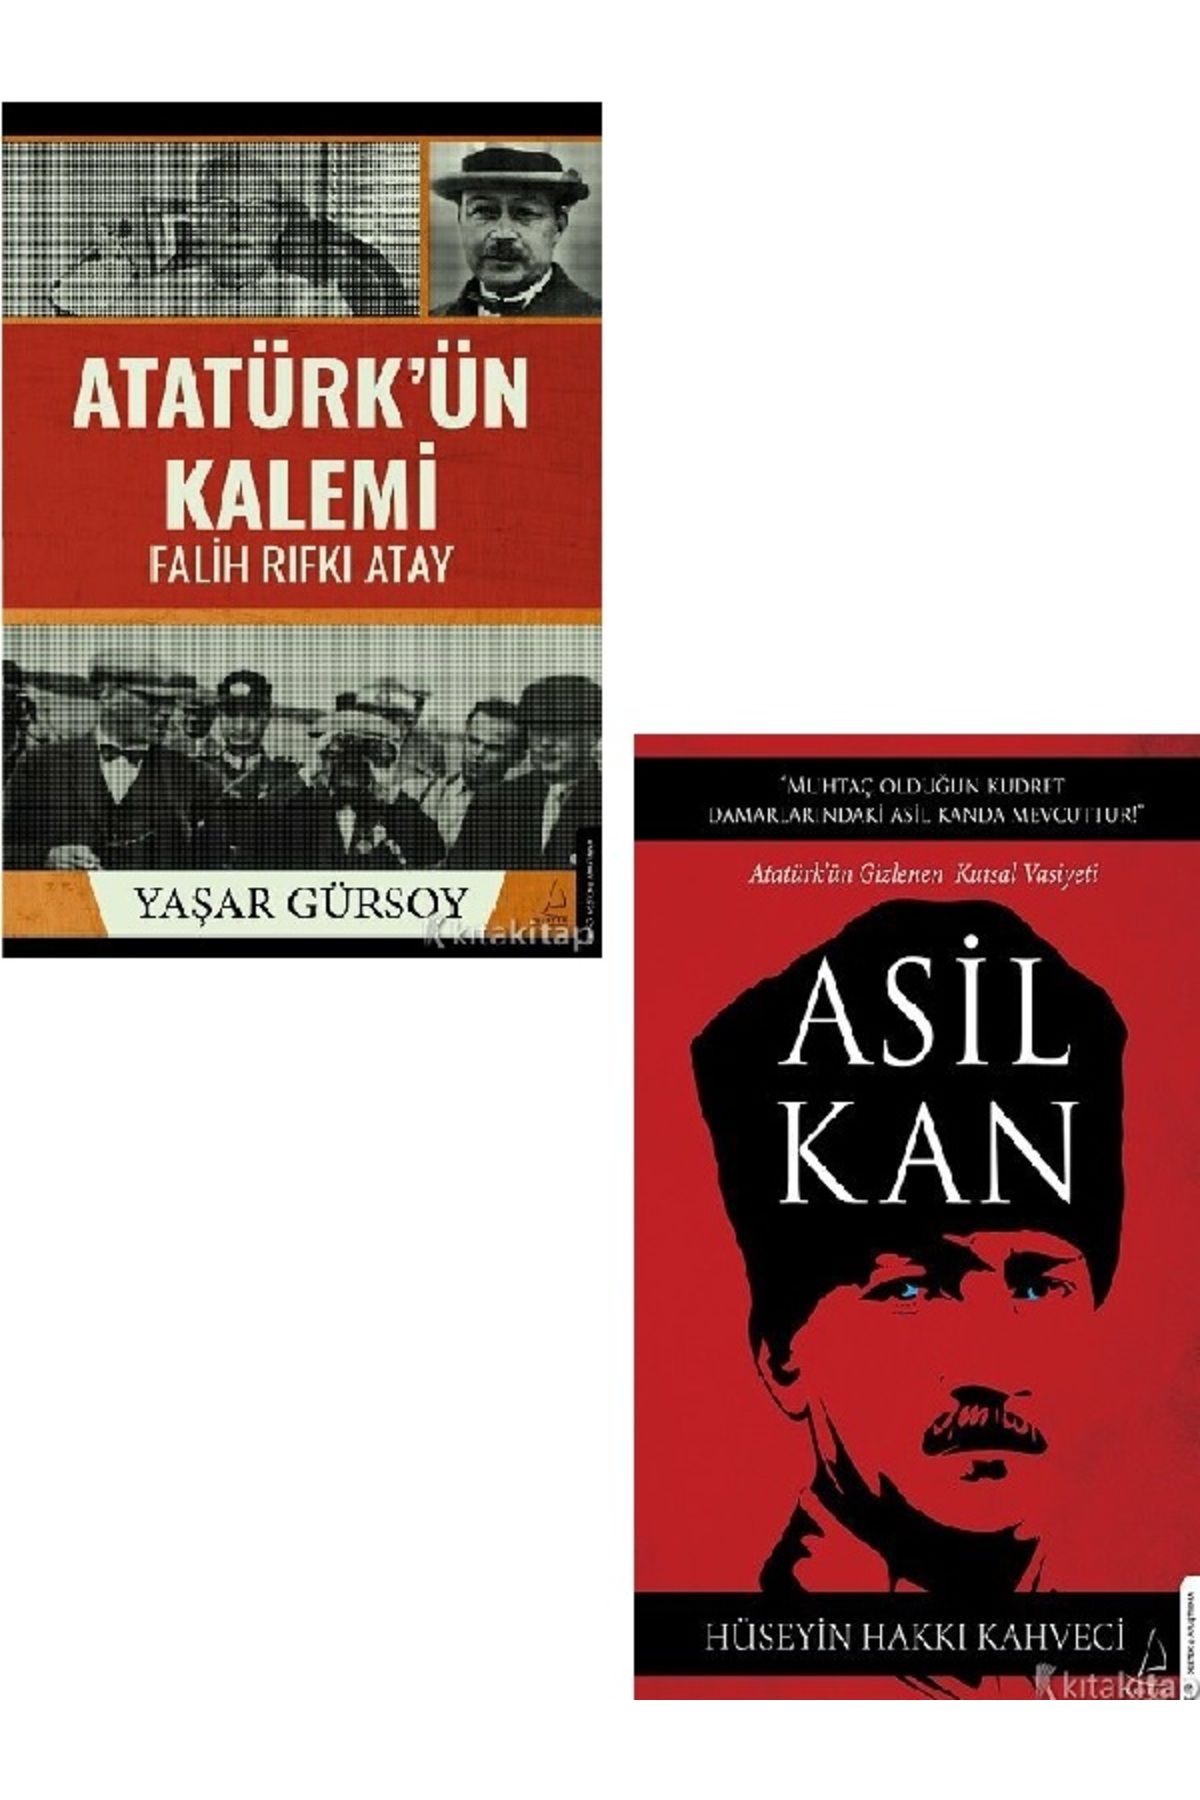 Destek Yayınları Atatürk’ün Kalemi - Asil Kan - Hüseyin Hakkı Kahveci - Yaşar Gürsoy 2 KİTAP SET